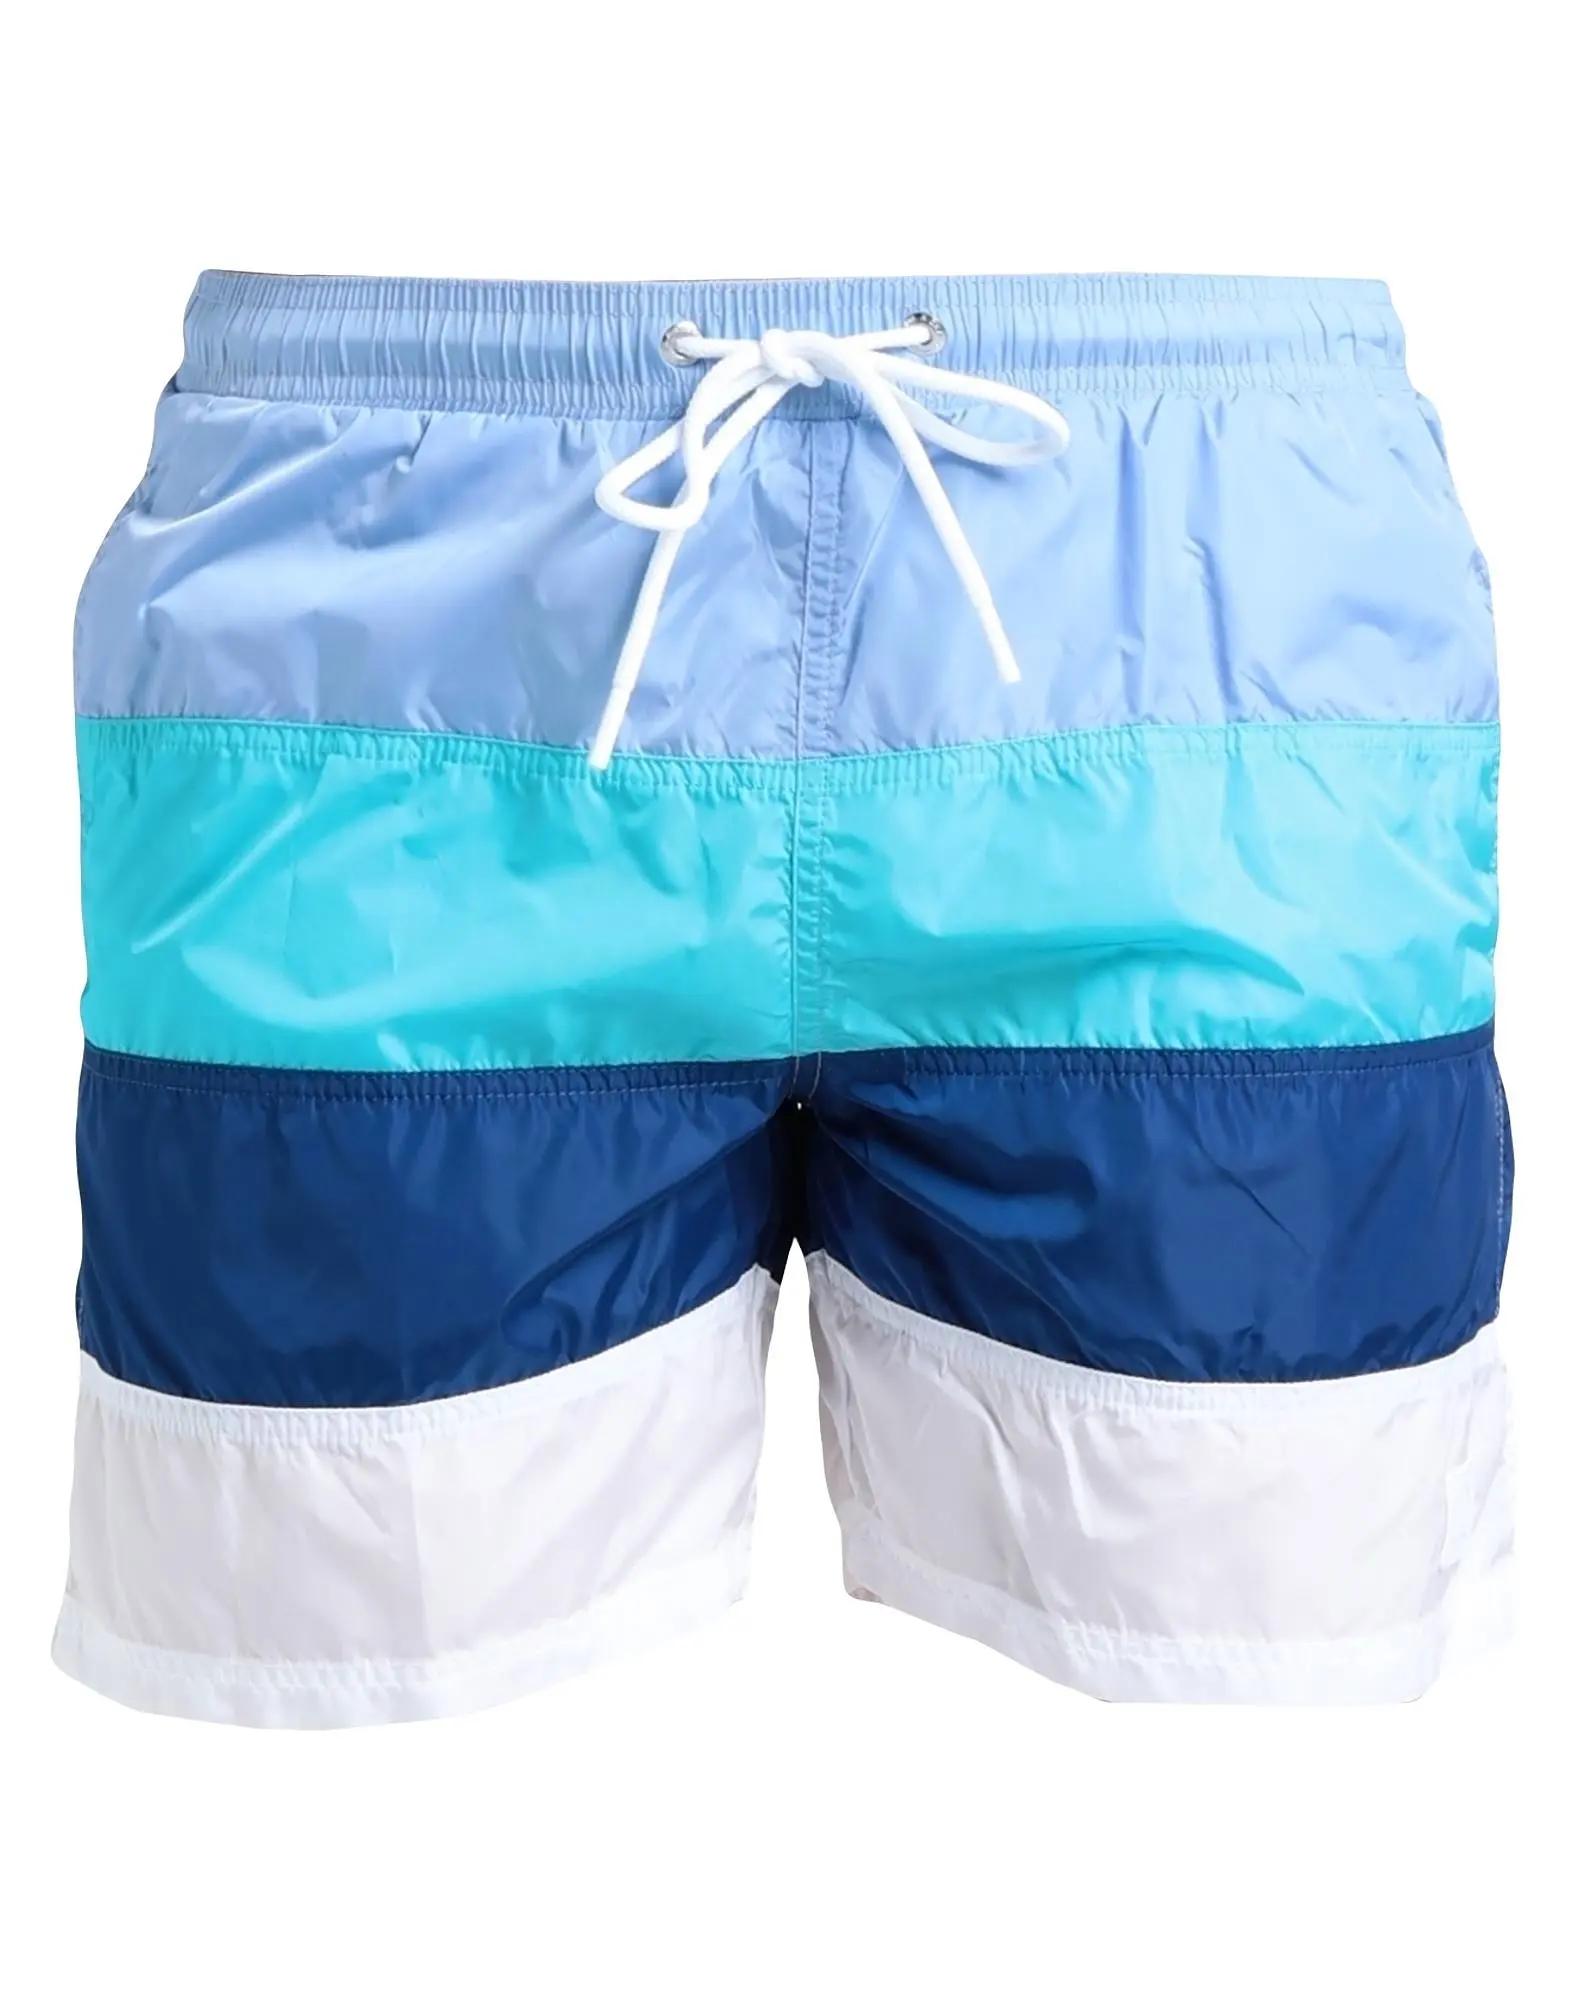 Wholesale new design style swim men's Swimshorts new short Swim Trunks for Men